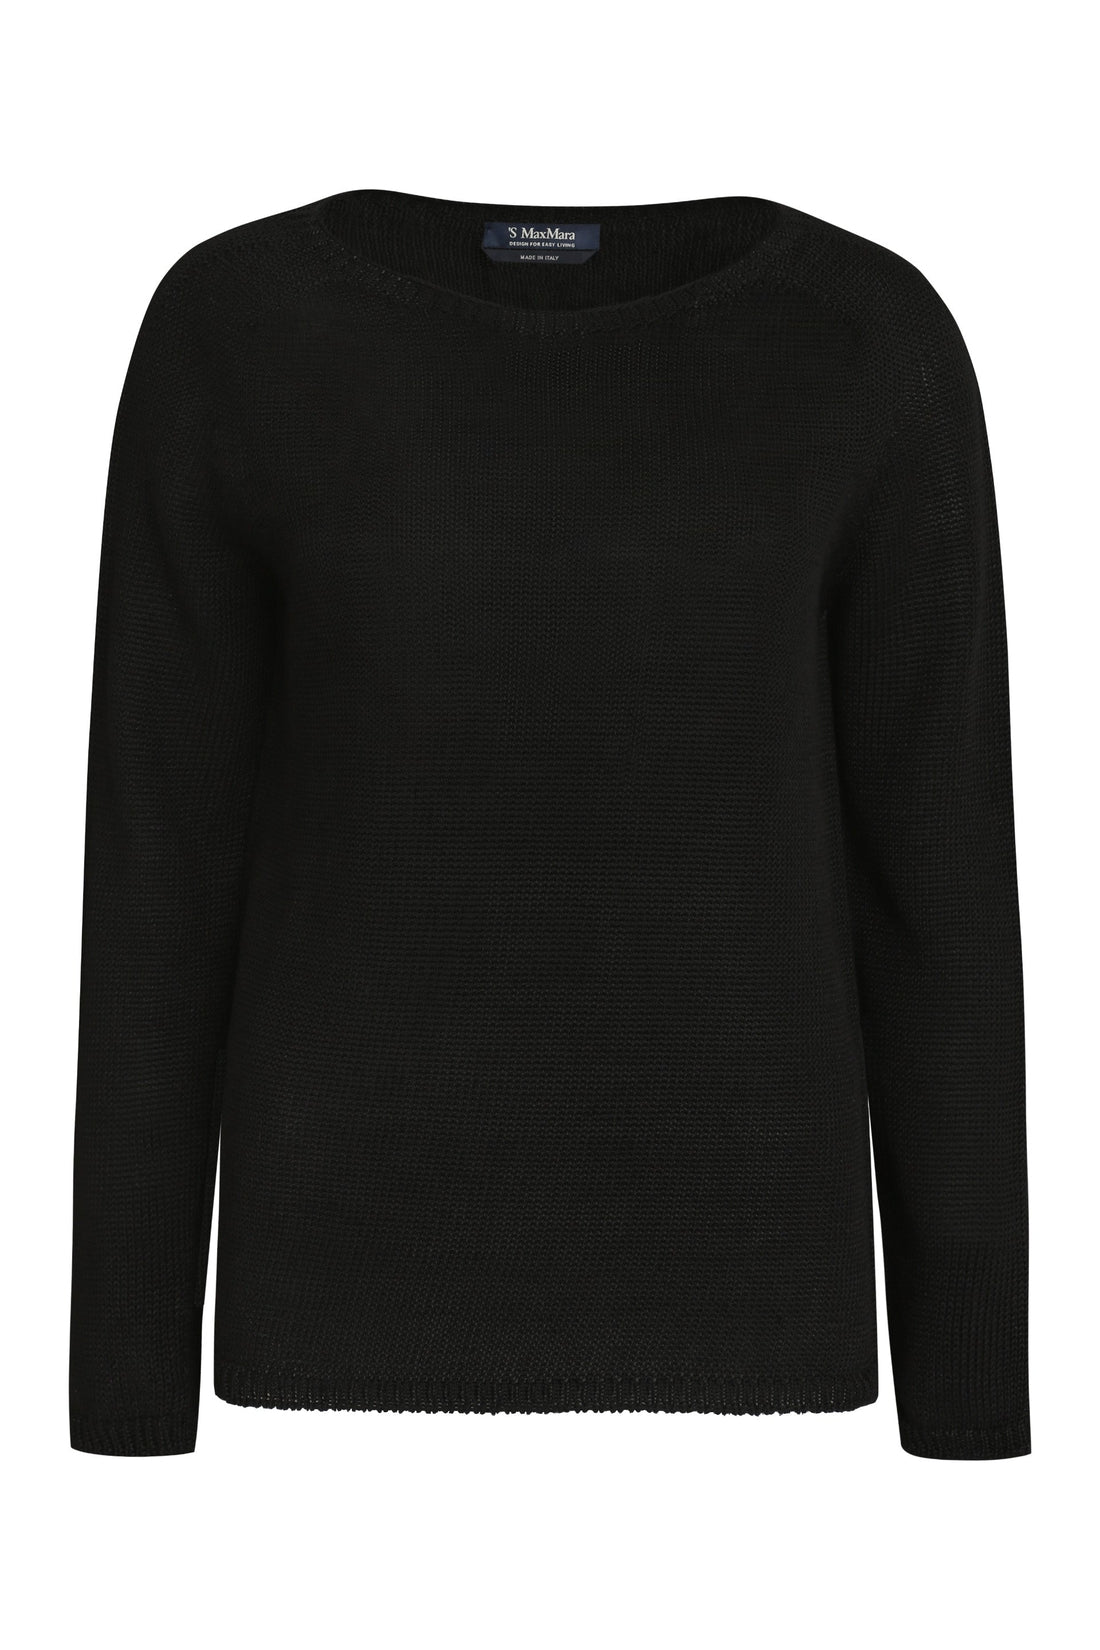 Льняной свитер Giolino S MAX MARA, черный цена и фото